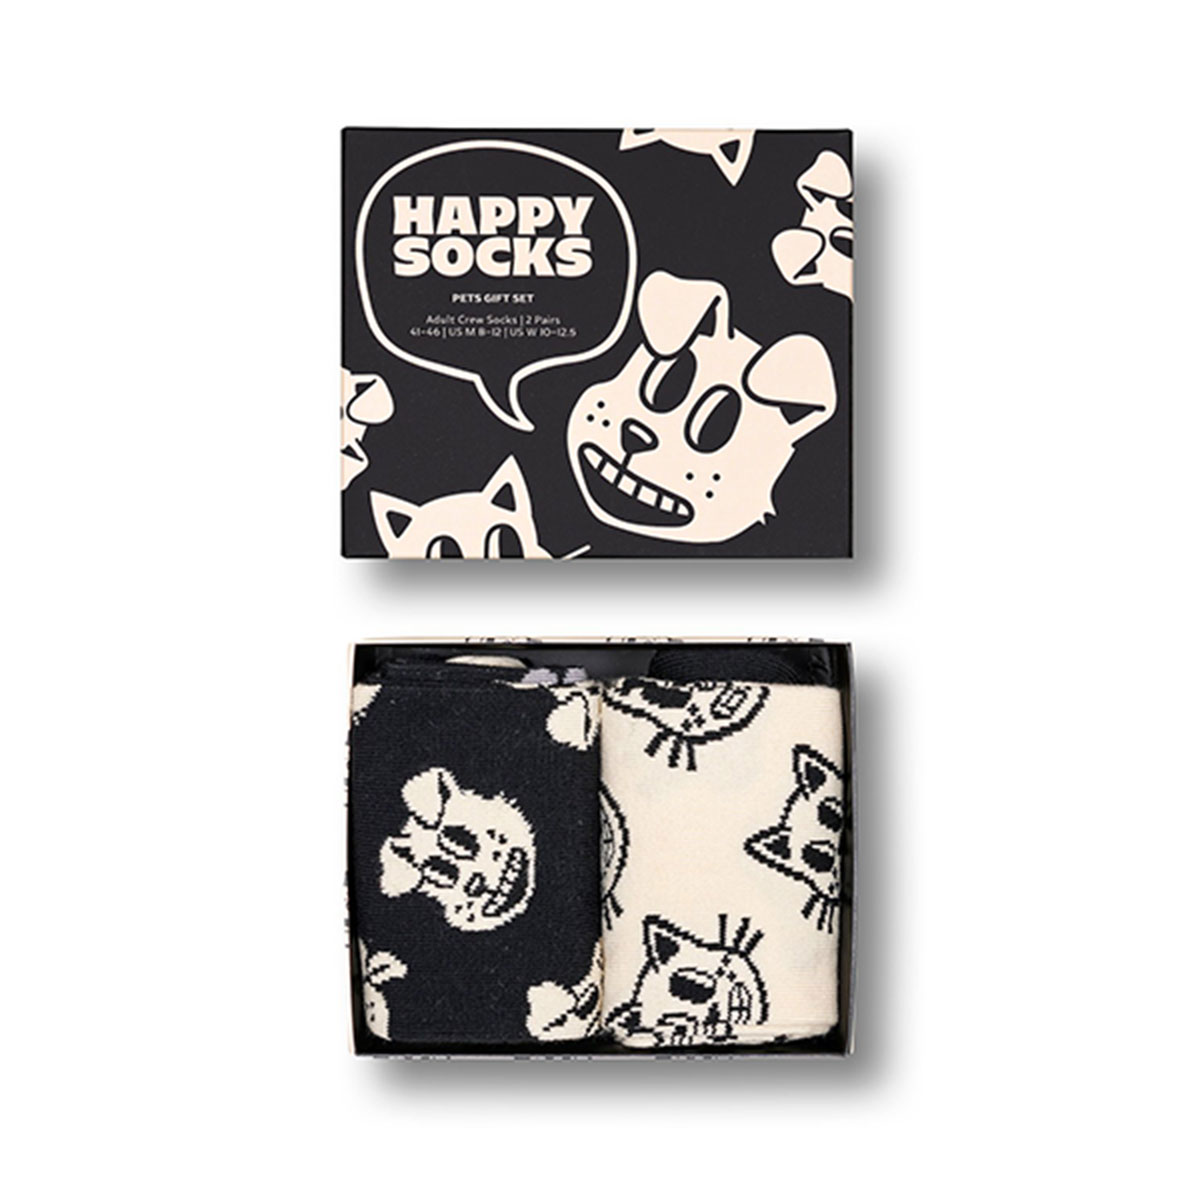 【2足セット】【24SS】Happy Socks ハッピーソックス Pets ( ペット ) 2-Pack Gift Set GIFT BOX 2足組 クルー丈 ソックス ユニセックス メンズ ＆ レディース 10243004